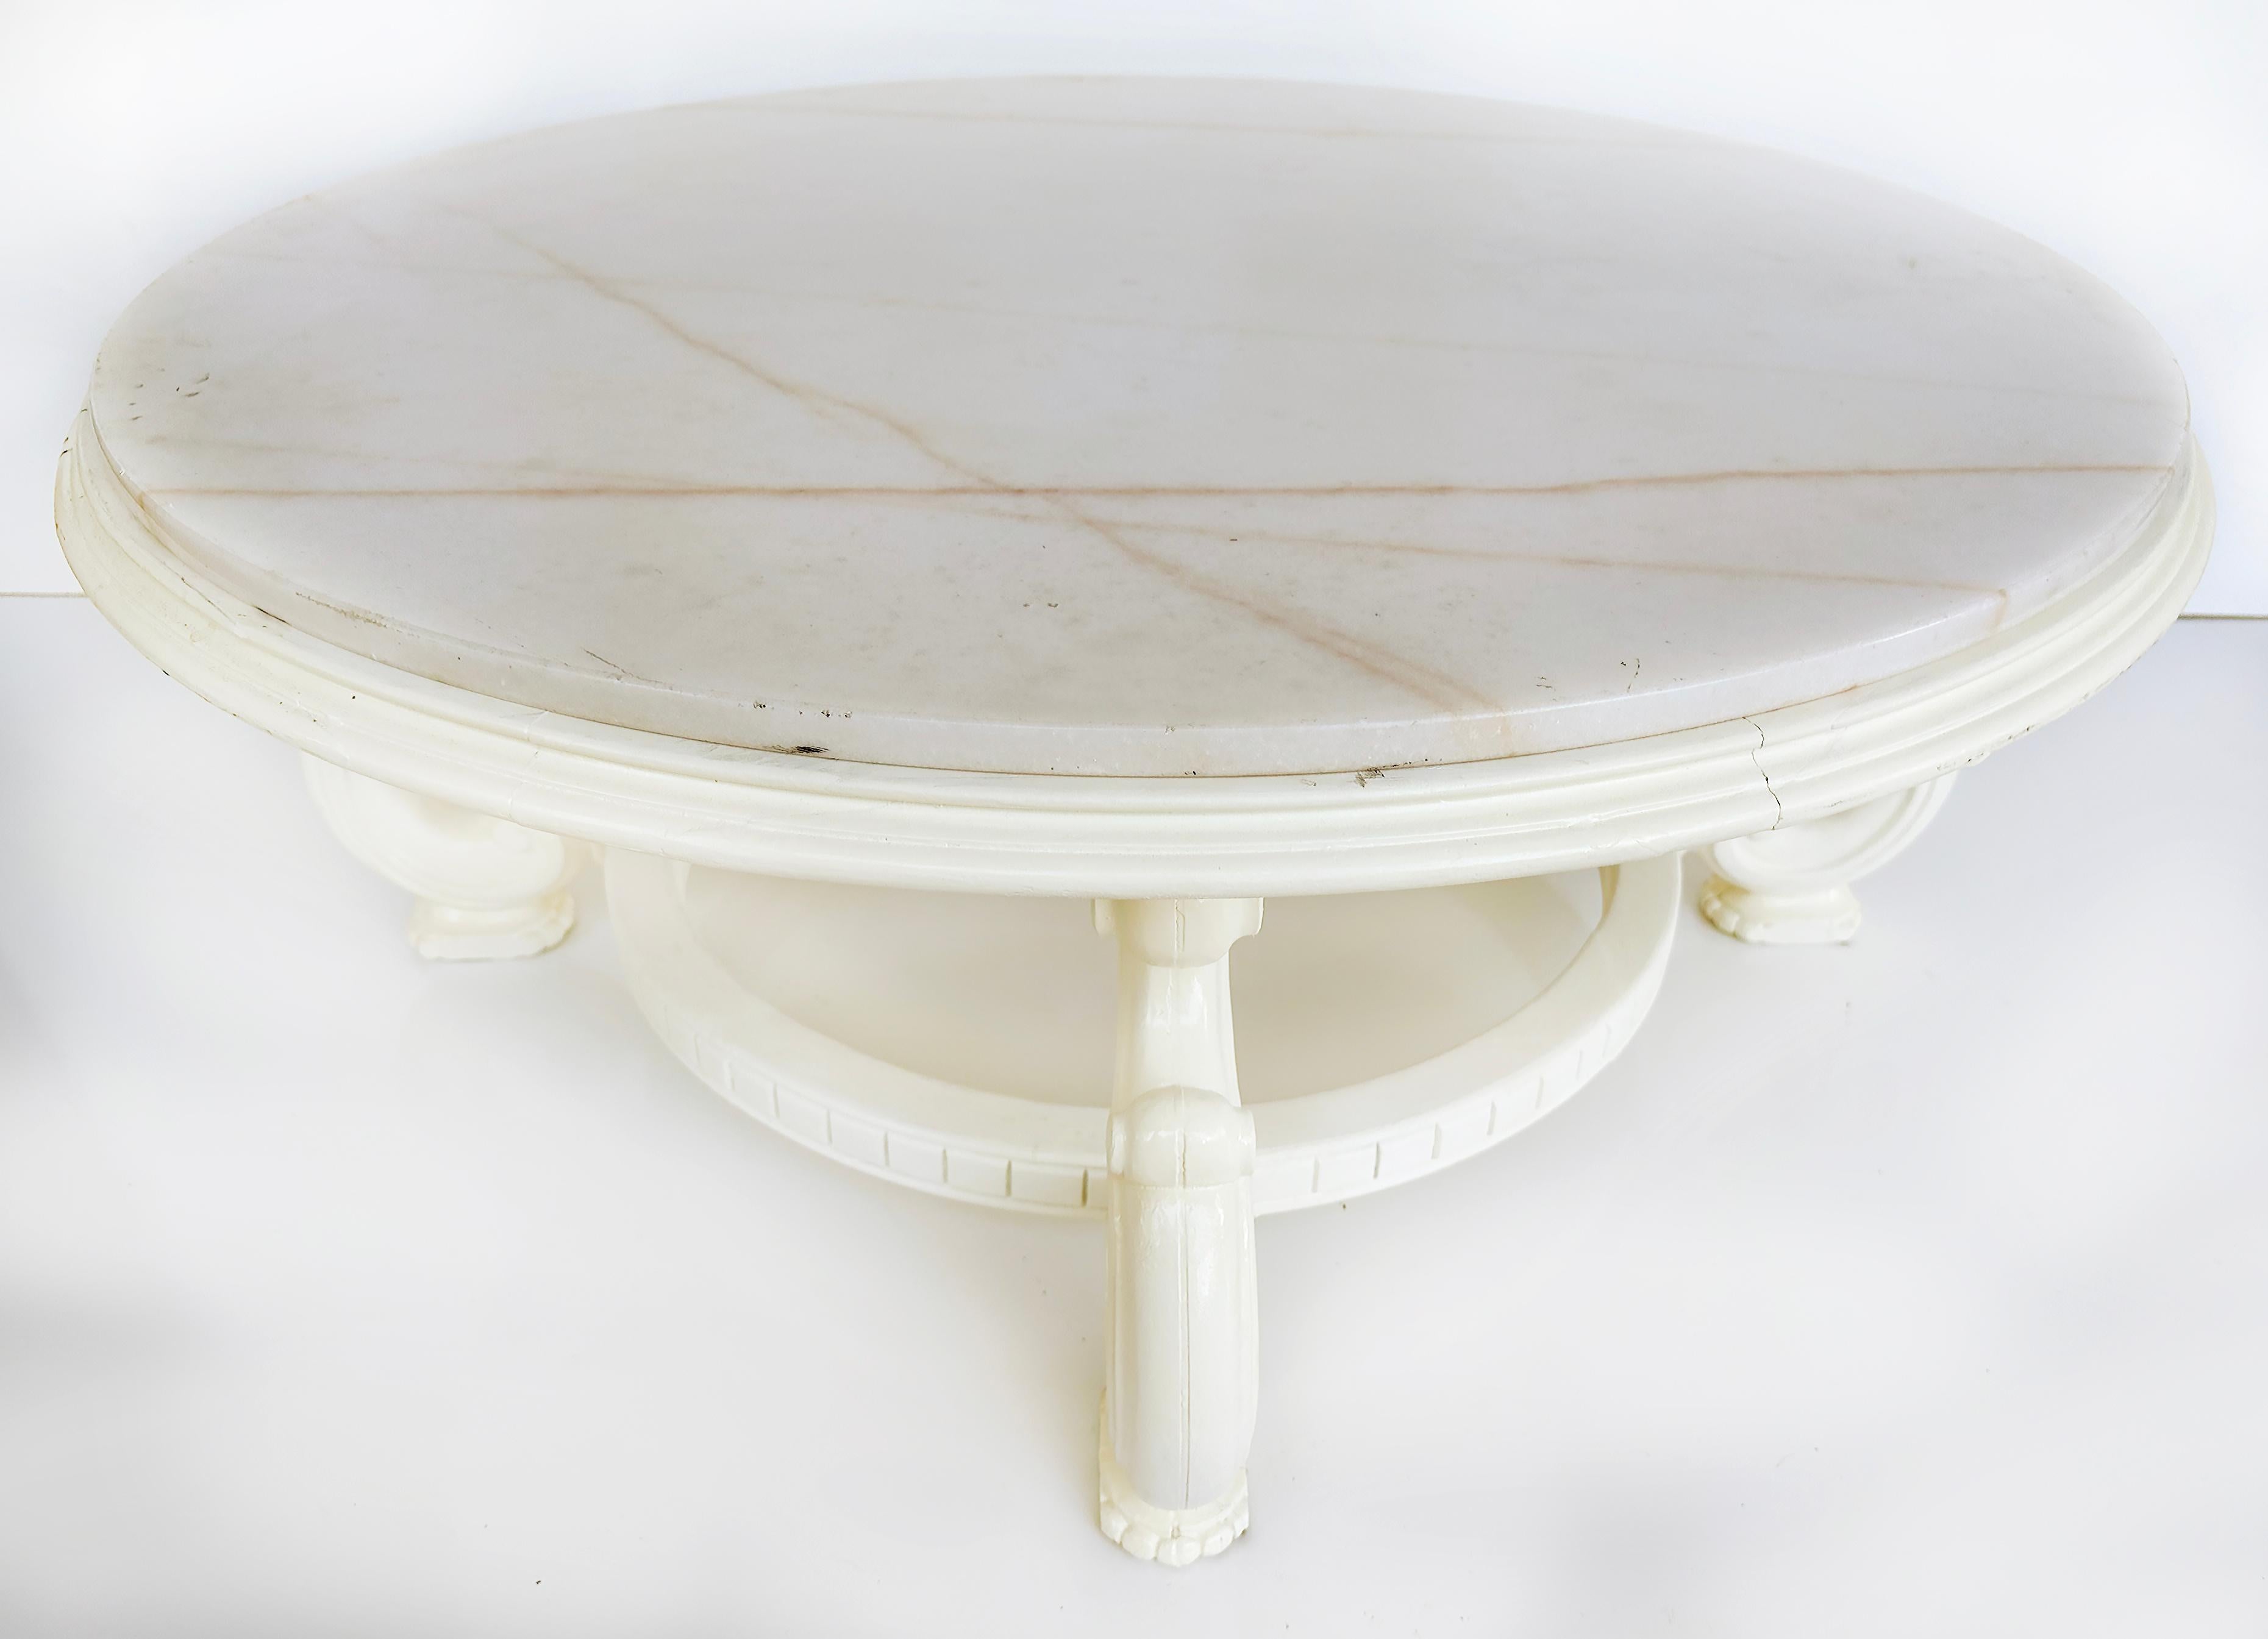 Table basse ronde laquée blanche vintage avec plateau en marbre

Nous vous proposons à la vente une table basse vintage en marbre laqué blanc. La table a été précédemment finie en blanc. La table est soutenue par quatre pieds à volutes qui